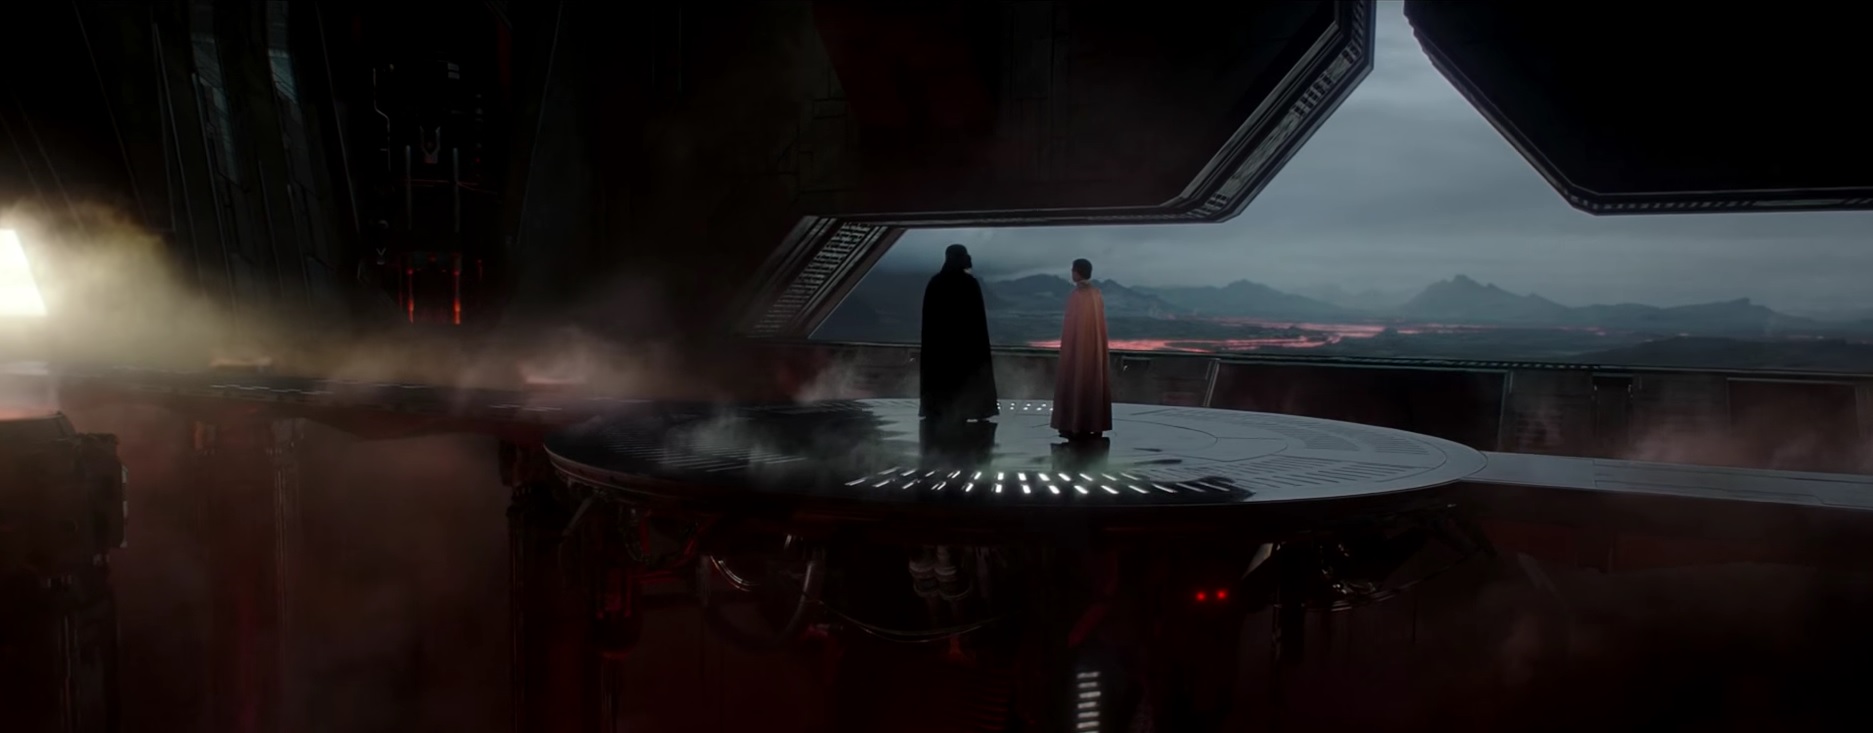 Darth Vader und Orson Krennic während der dunkle Lord den Direktor zur Rede stellt